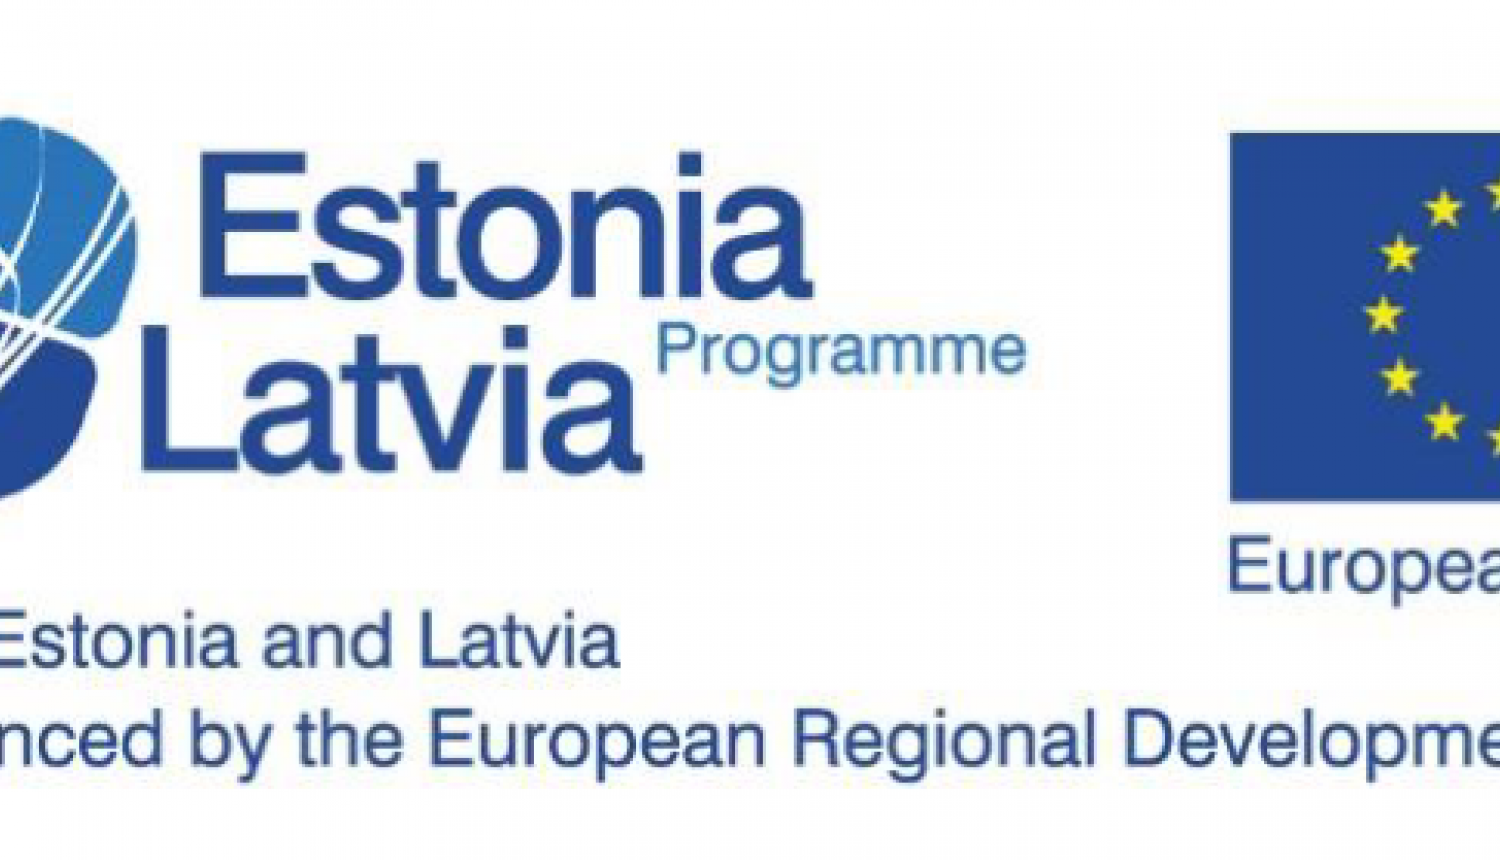 Estonia_Latvia